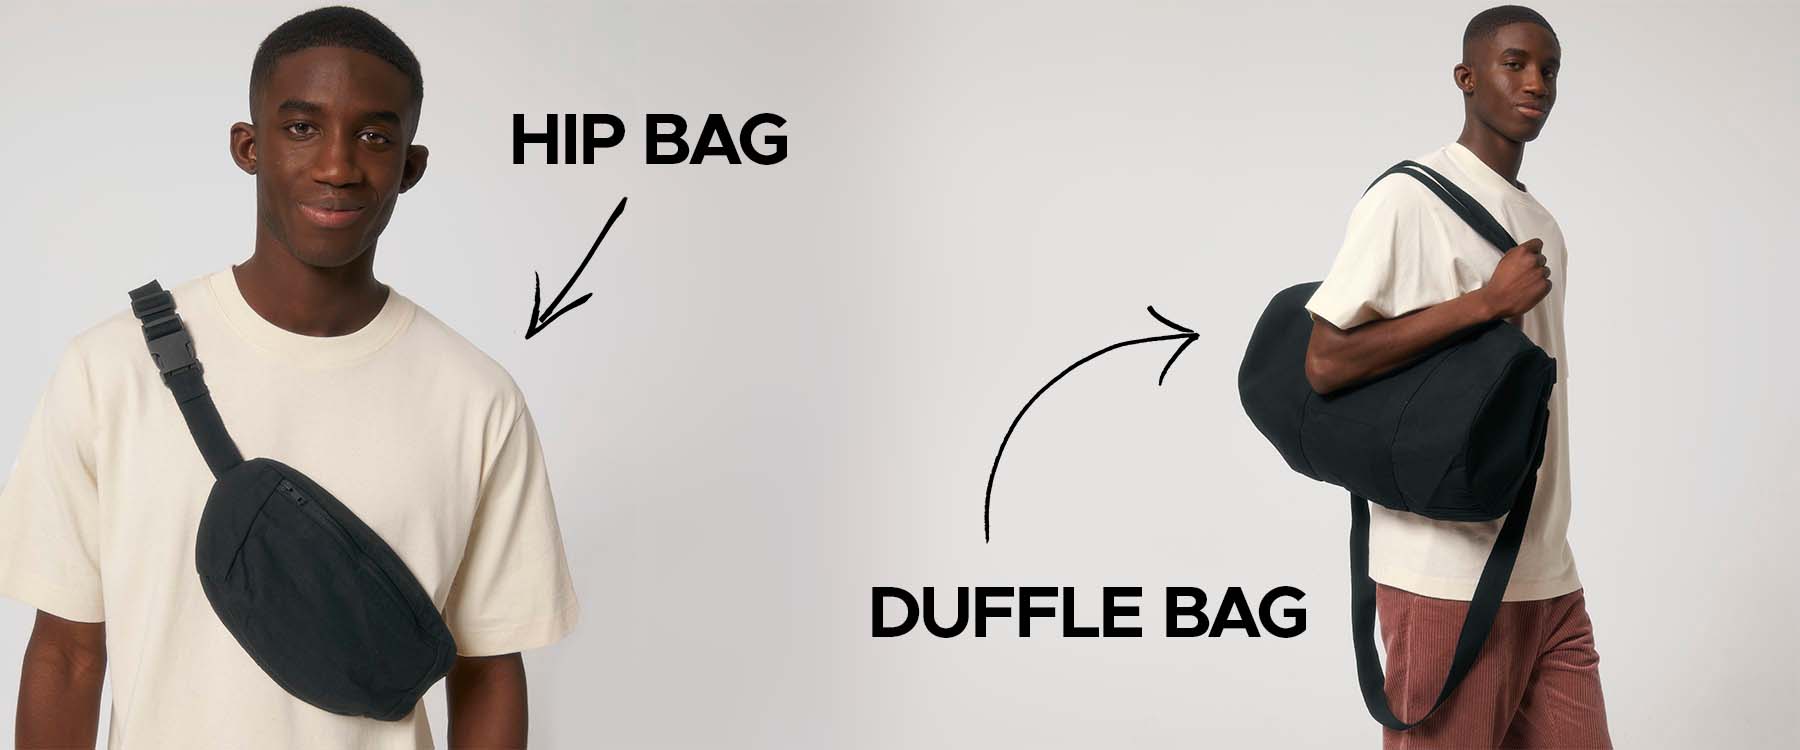 NEW Hip Bag and Duffle Bag